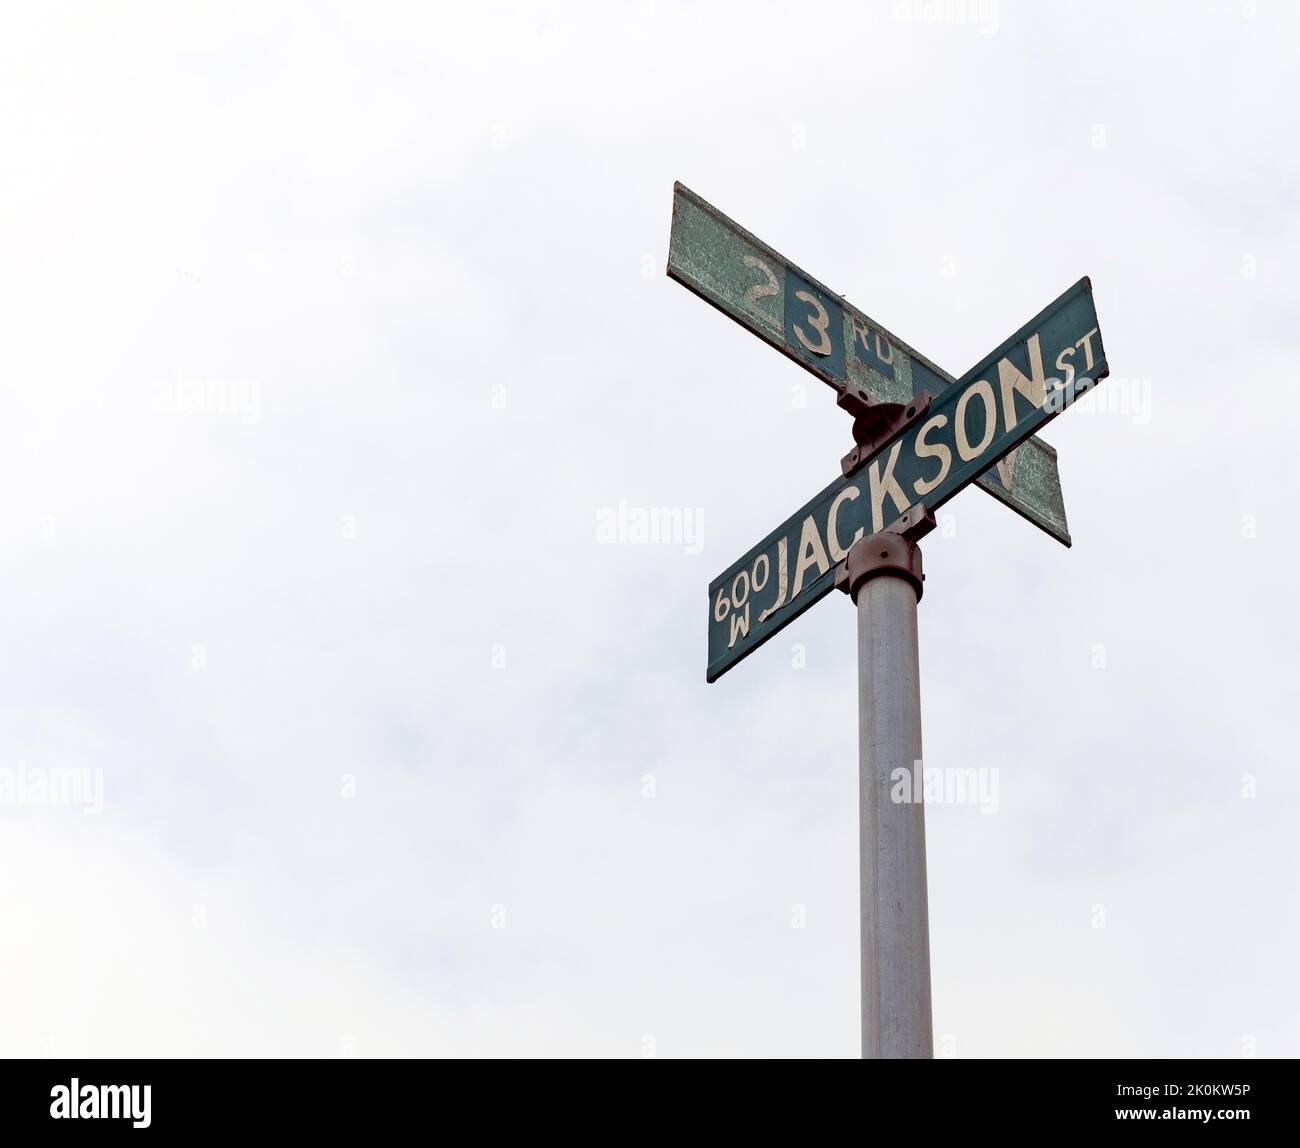 L'intersection des panneaux de rue Jackson et 23rd à Gary, Indiana, États-Unis. Jackson Street porte le nom de la famille Jackson qui a vécu ici. Banque D'Images